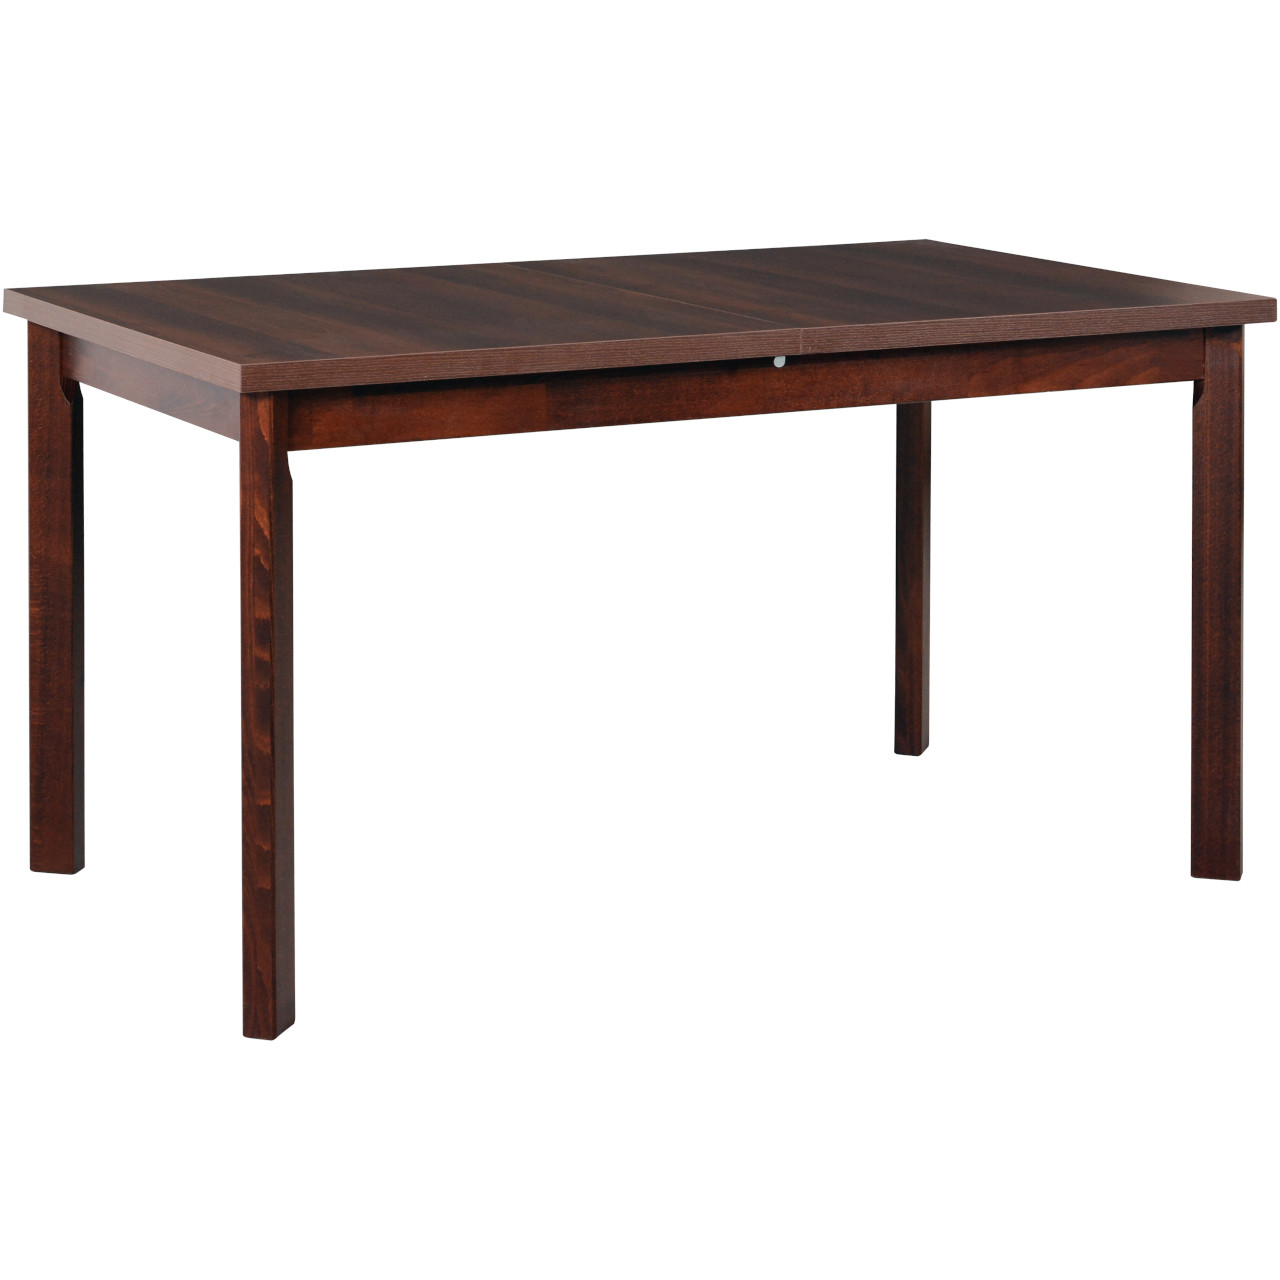 Table MODENA 1 P 80x140/180 walnut laminate